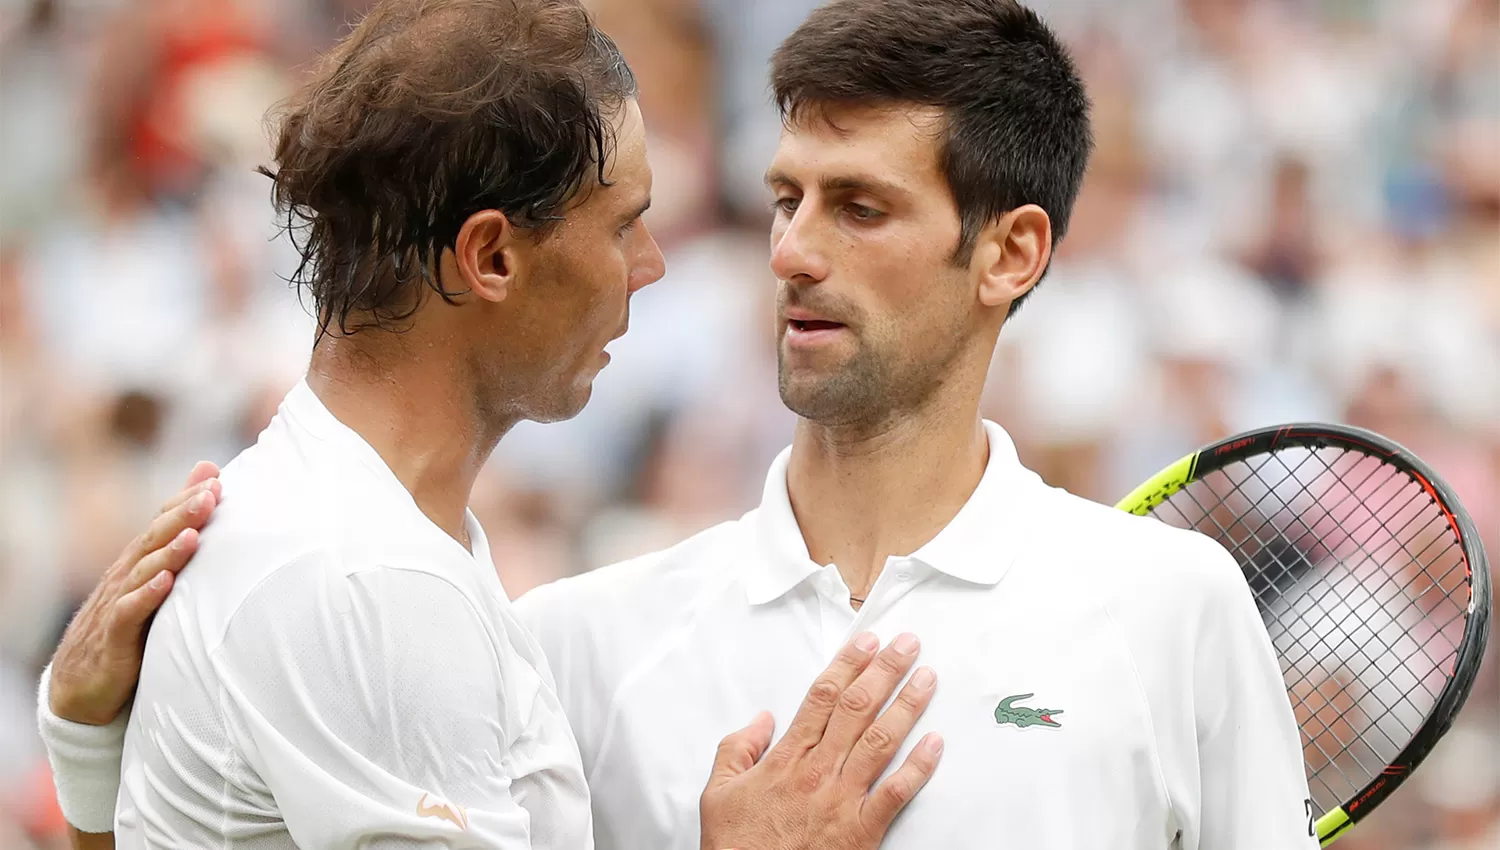 TITANES. Nadal felicita a Djokovic luego de caer en la semifinal de Wimbledon.  